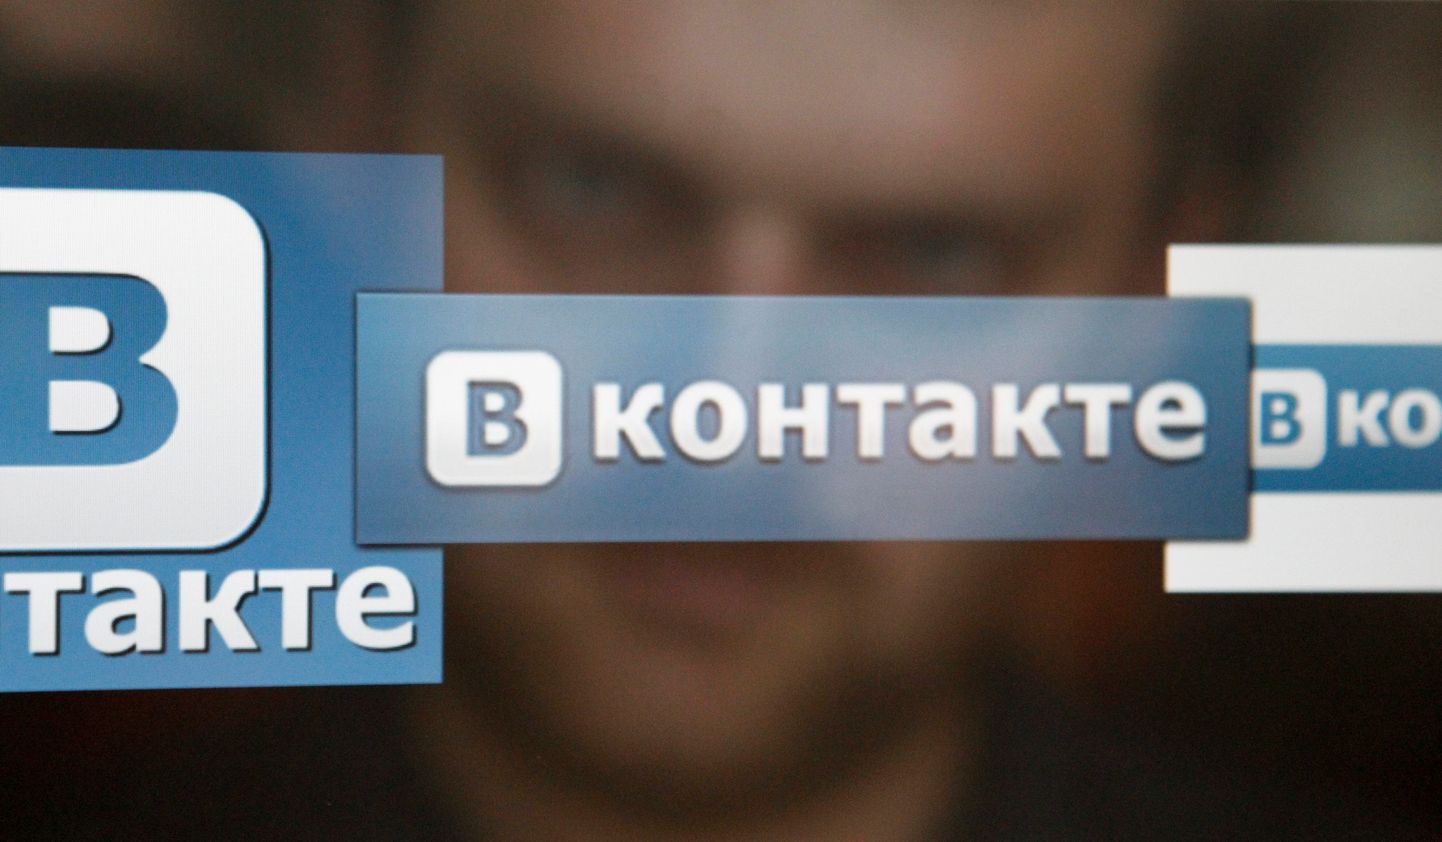 Vene sotsiaalvõrgustiku Vkontakte logo.